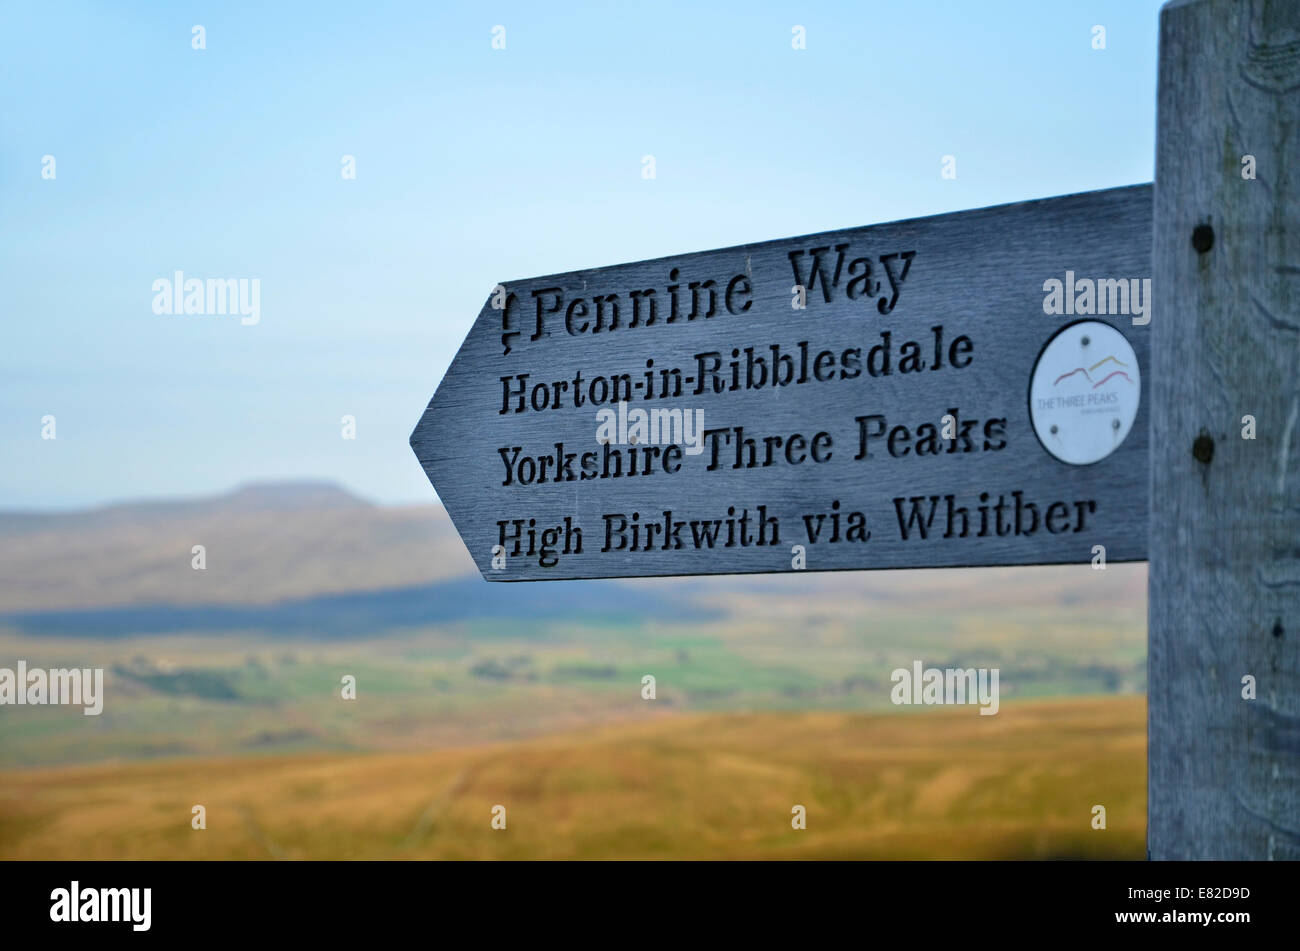 Un cartel en la Vía Apeninos Yorkshire tres picos a pie Foto de stock